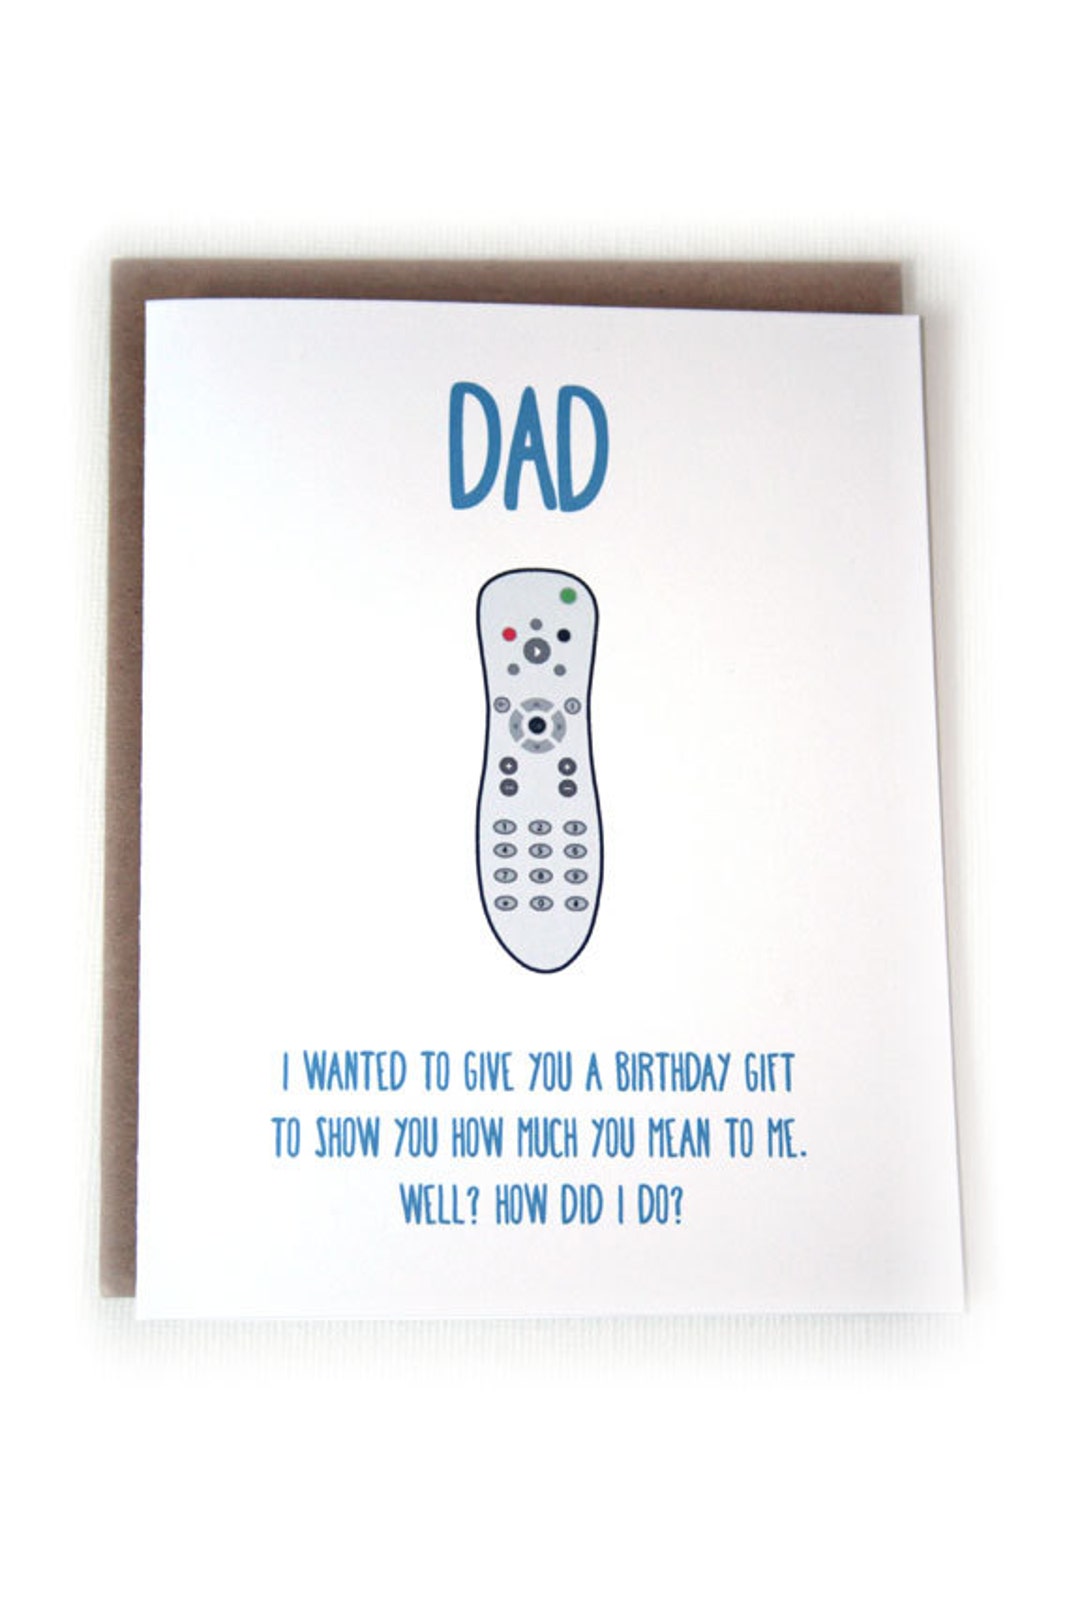 dads-birthday-card-birthday-card-for-dad-greeting-card-etsy-denmark